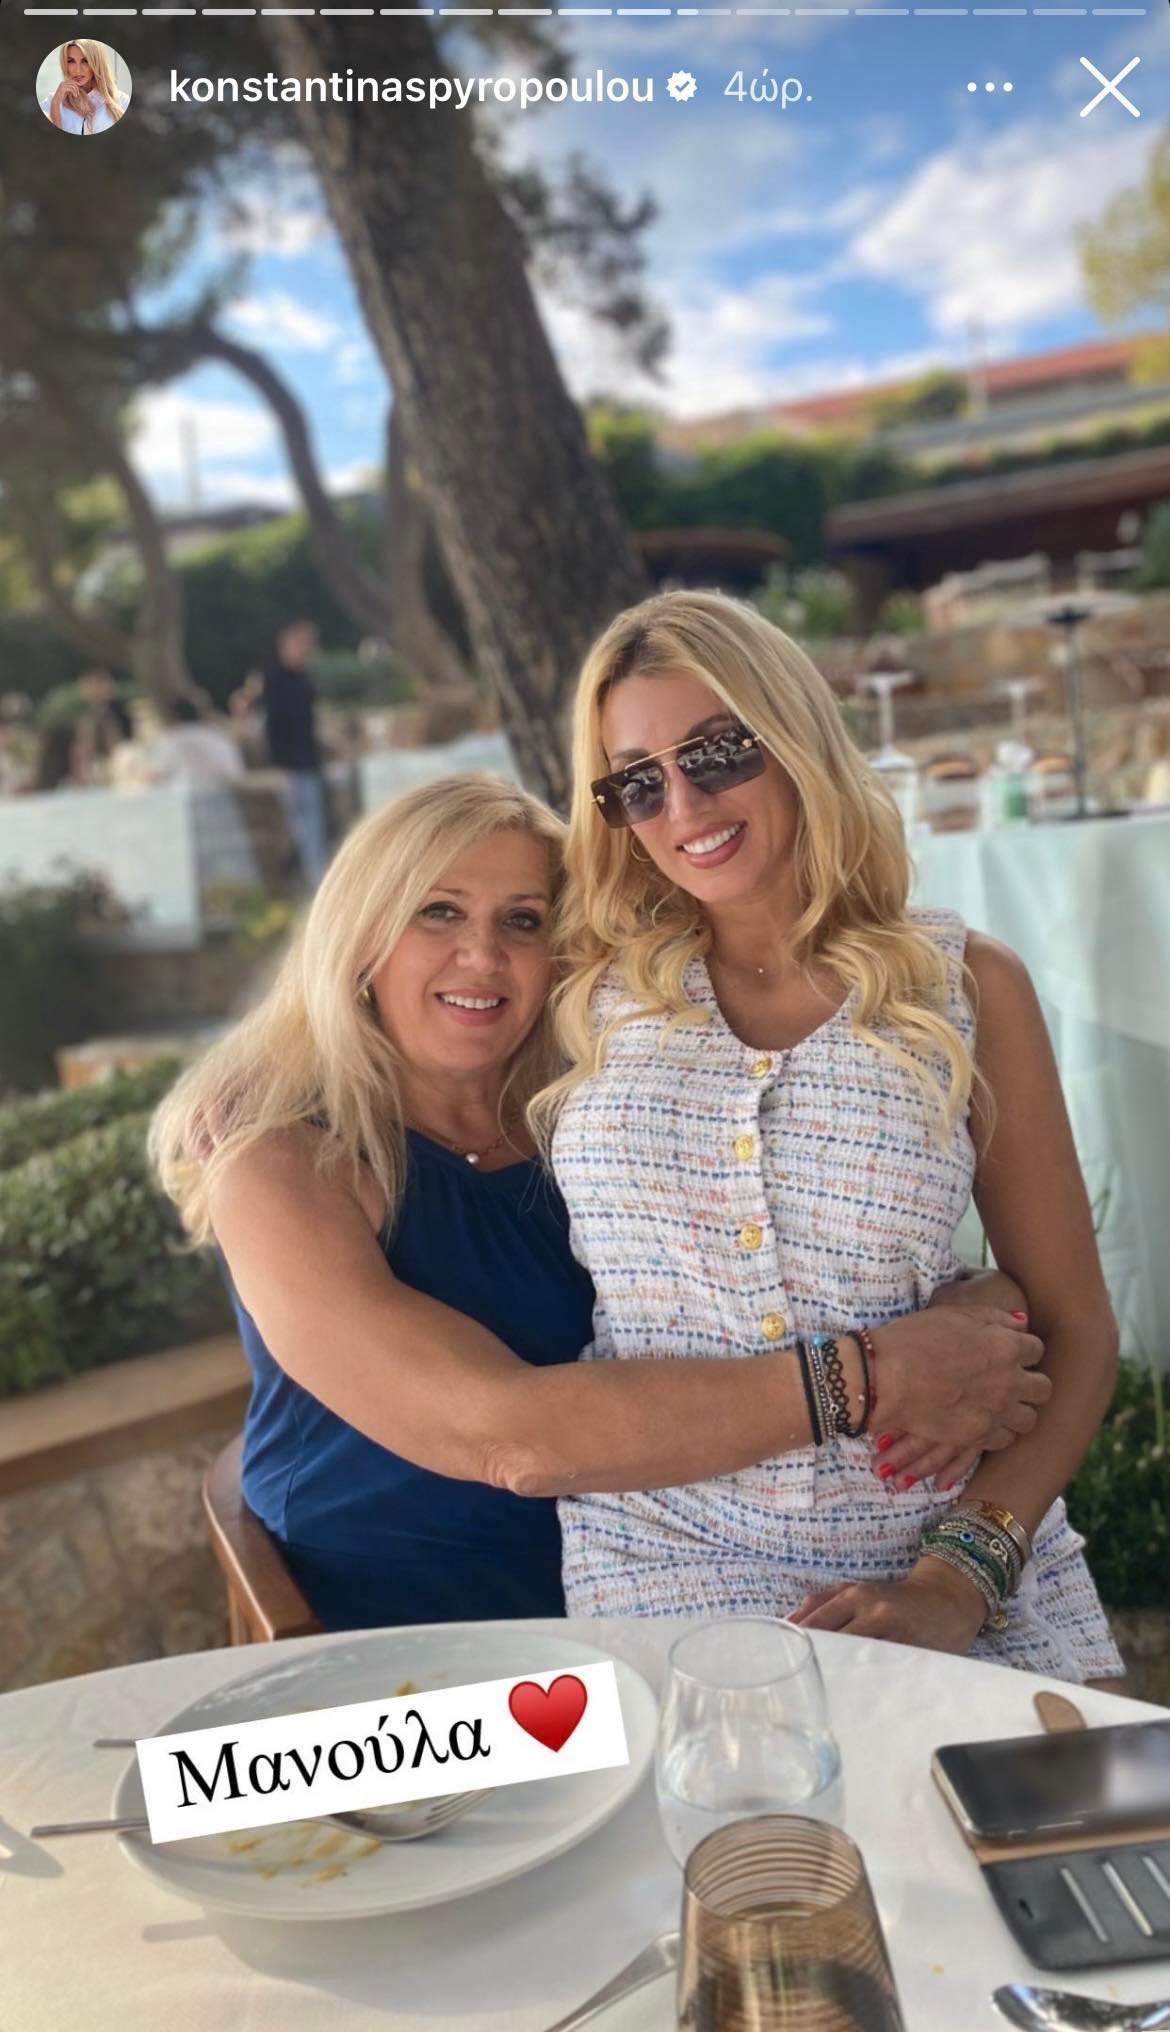 Κωνσταντίνα Σπυροπούλου: Δείτε την εγκυμονούσα να ποζάρει αγκαλιά με την γλυκύτατη μητέρα της- Η ομοιότητα μεταξύ τους